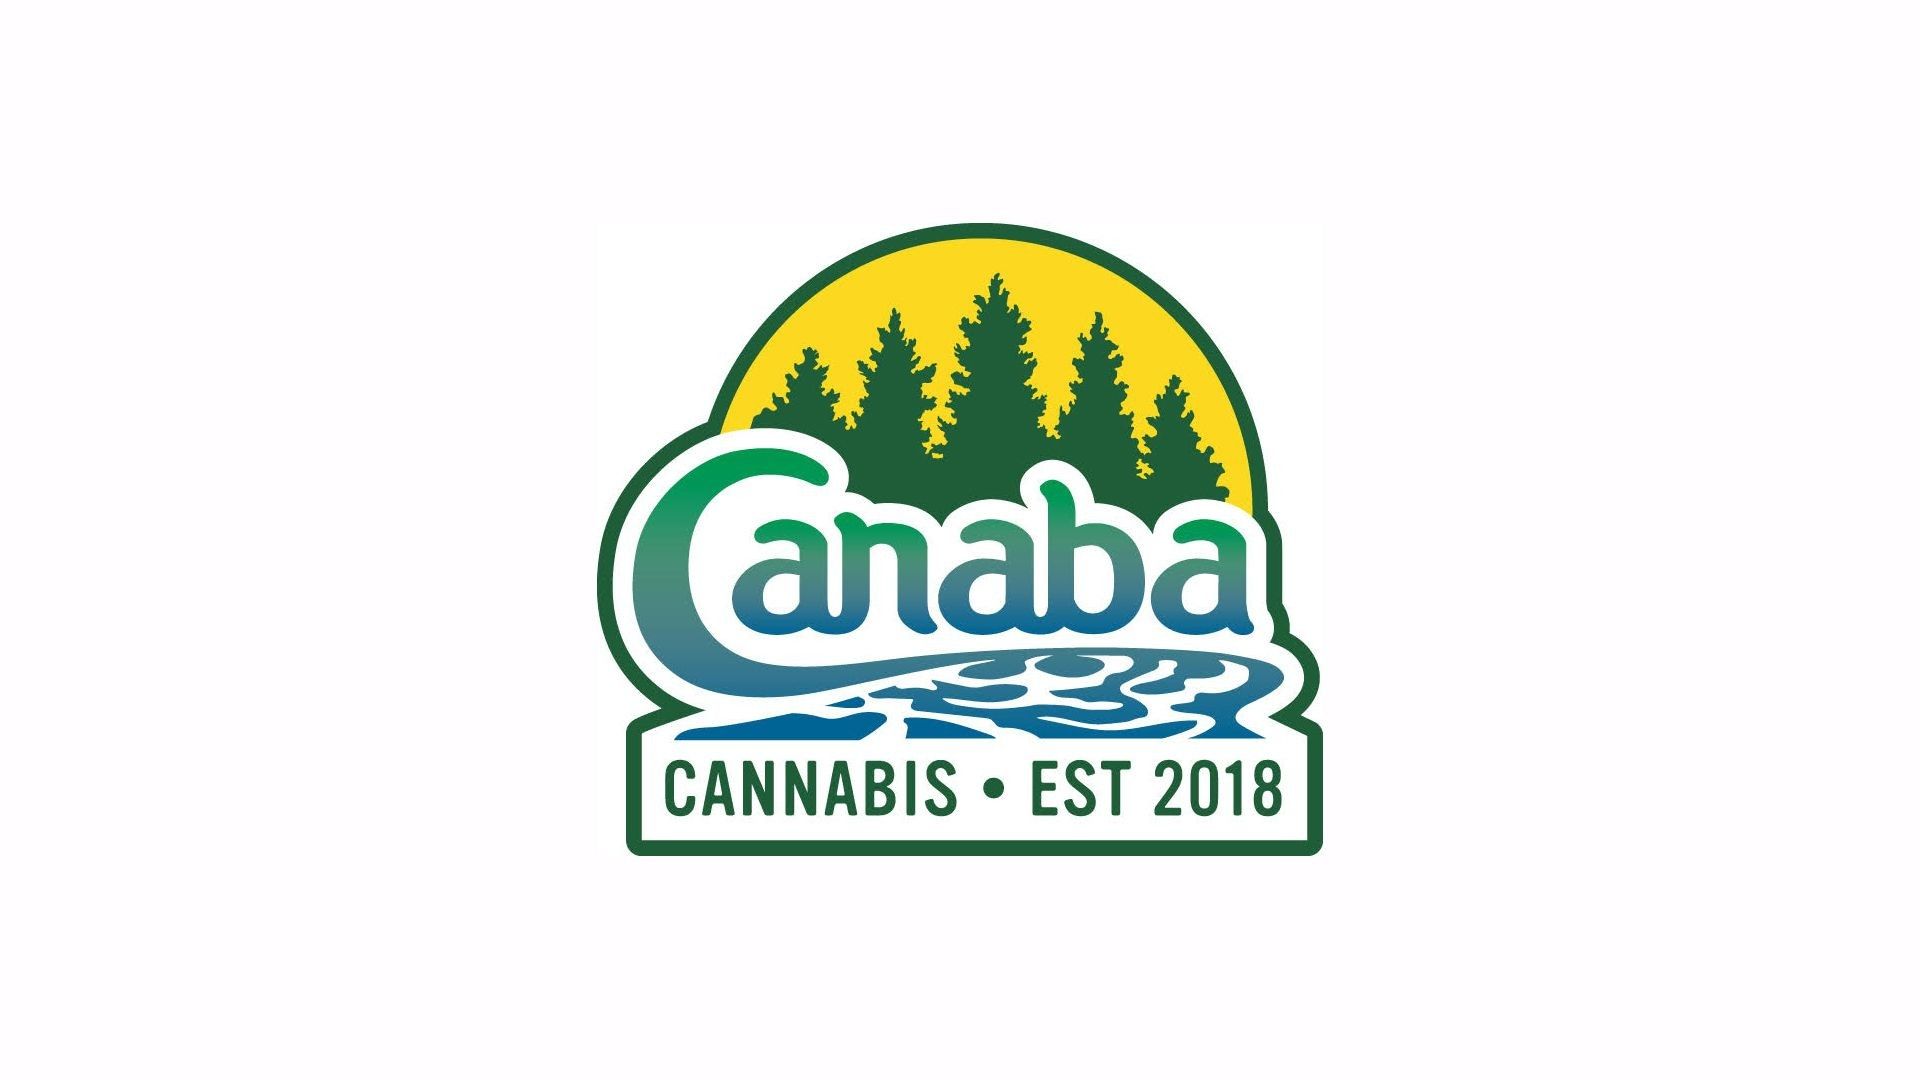 Cannabis Store Canaba Cannabis - 0